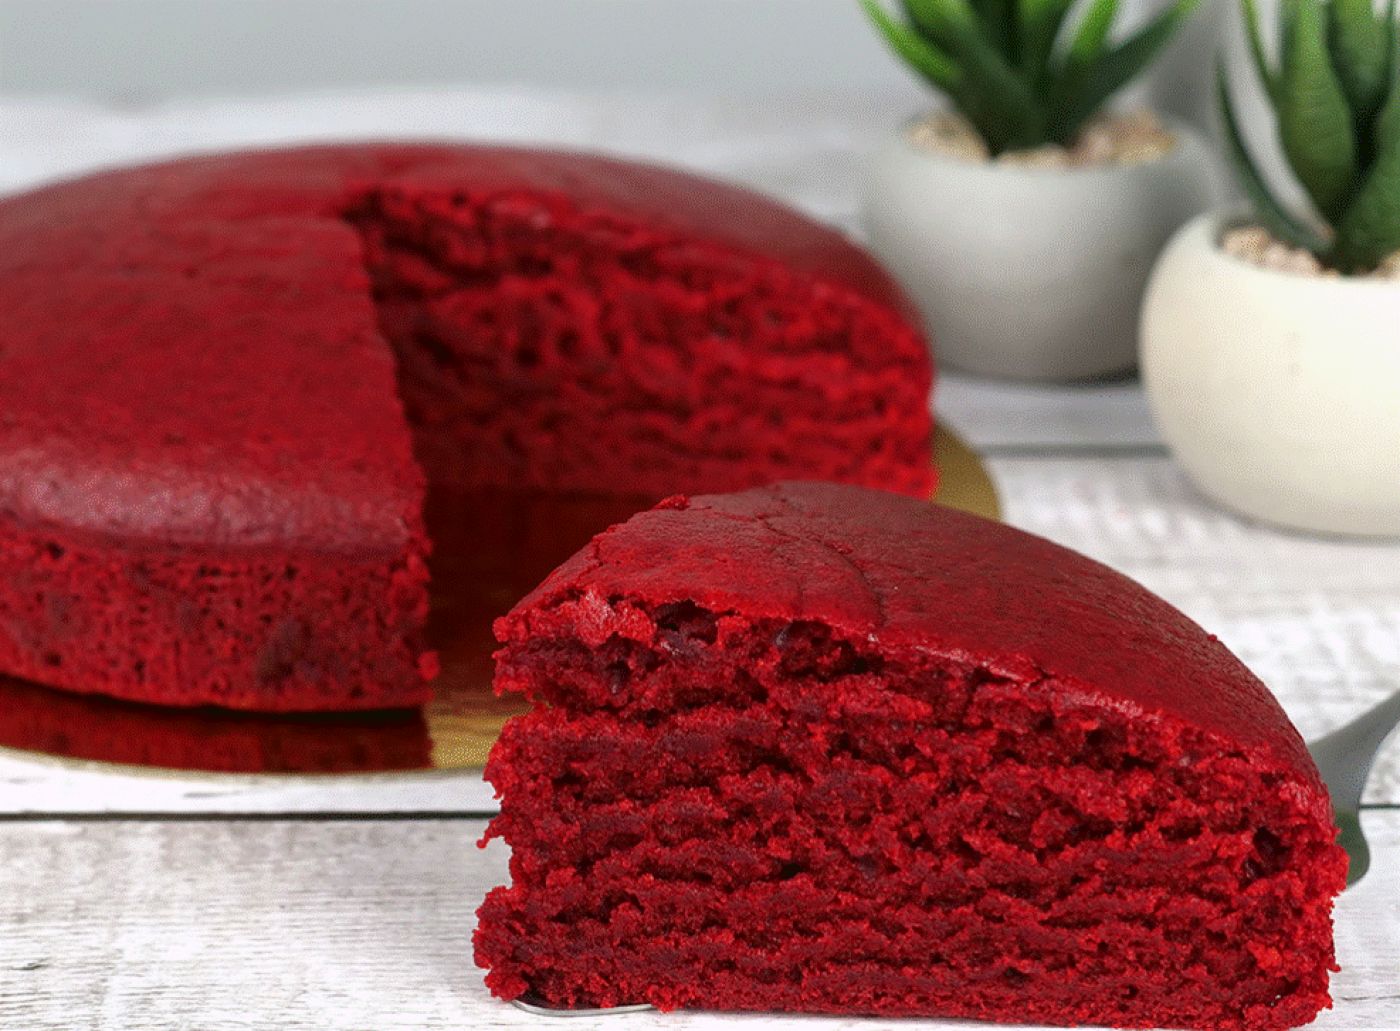 Super prăjitura roșie ca focul, perfectă pentru Postul Crăciunului. Iată cât de repede se prepară această delicatesă pufoasă